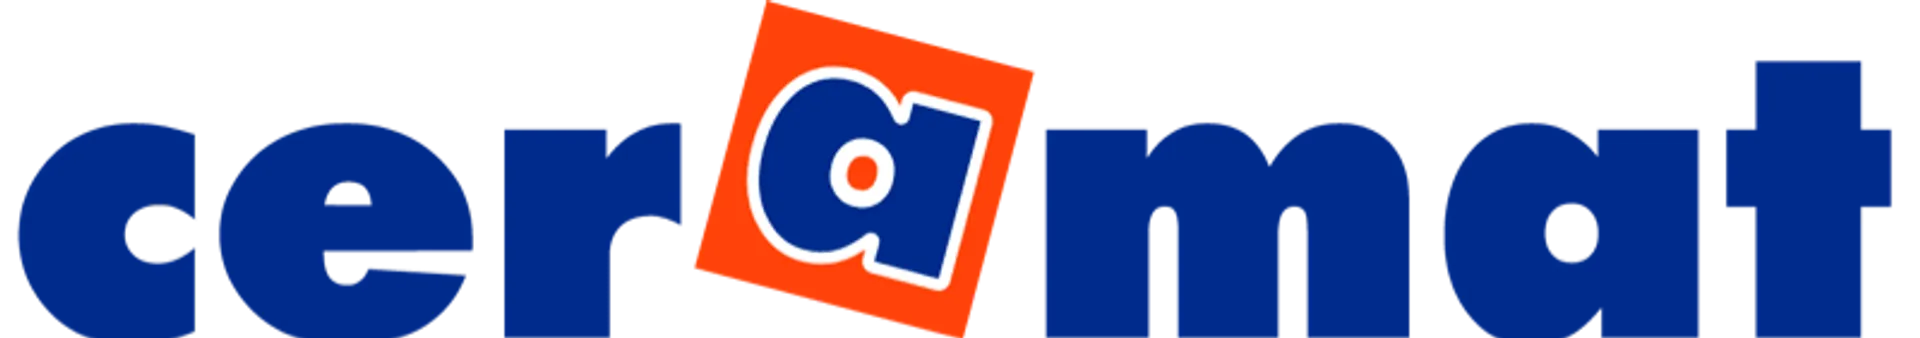 CERAMAT logo de catálogo